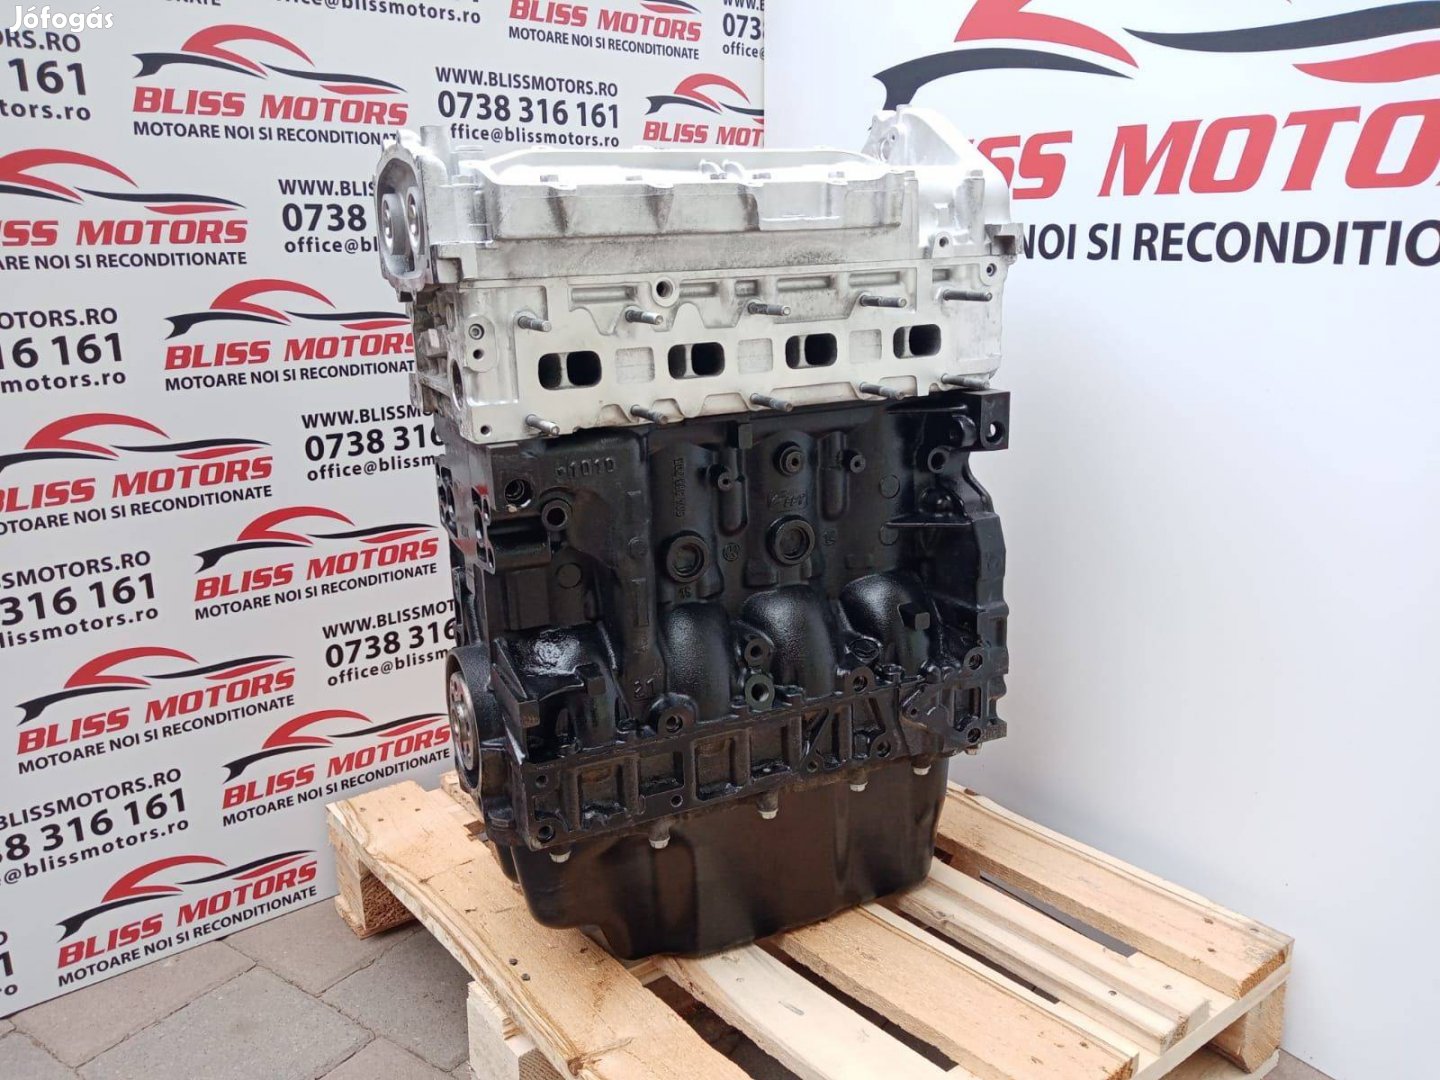 Fiat ducato Iveco daily 2.3 jtd EU5 F1AE3481 felújított motor